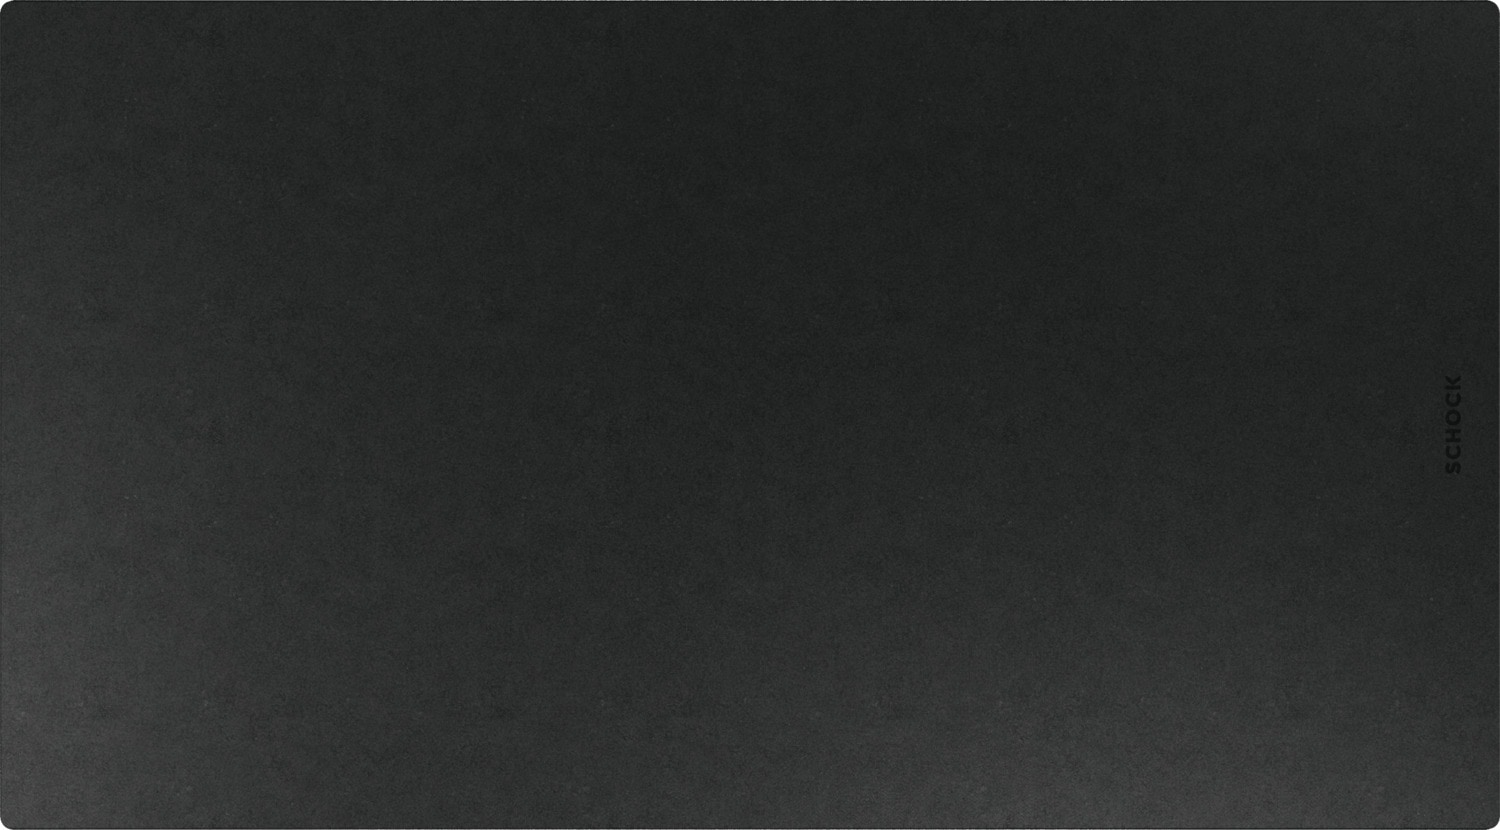 Schock Schneidebrett »Schneidbrett Fibre Rock«, schwarz, 54,2/30 cm, spülmaschinengeeignet